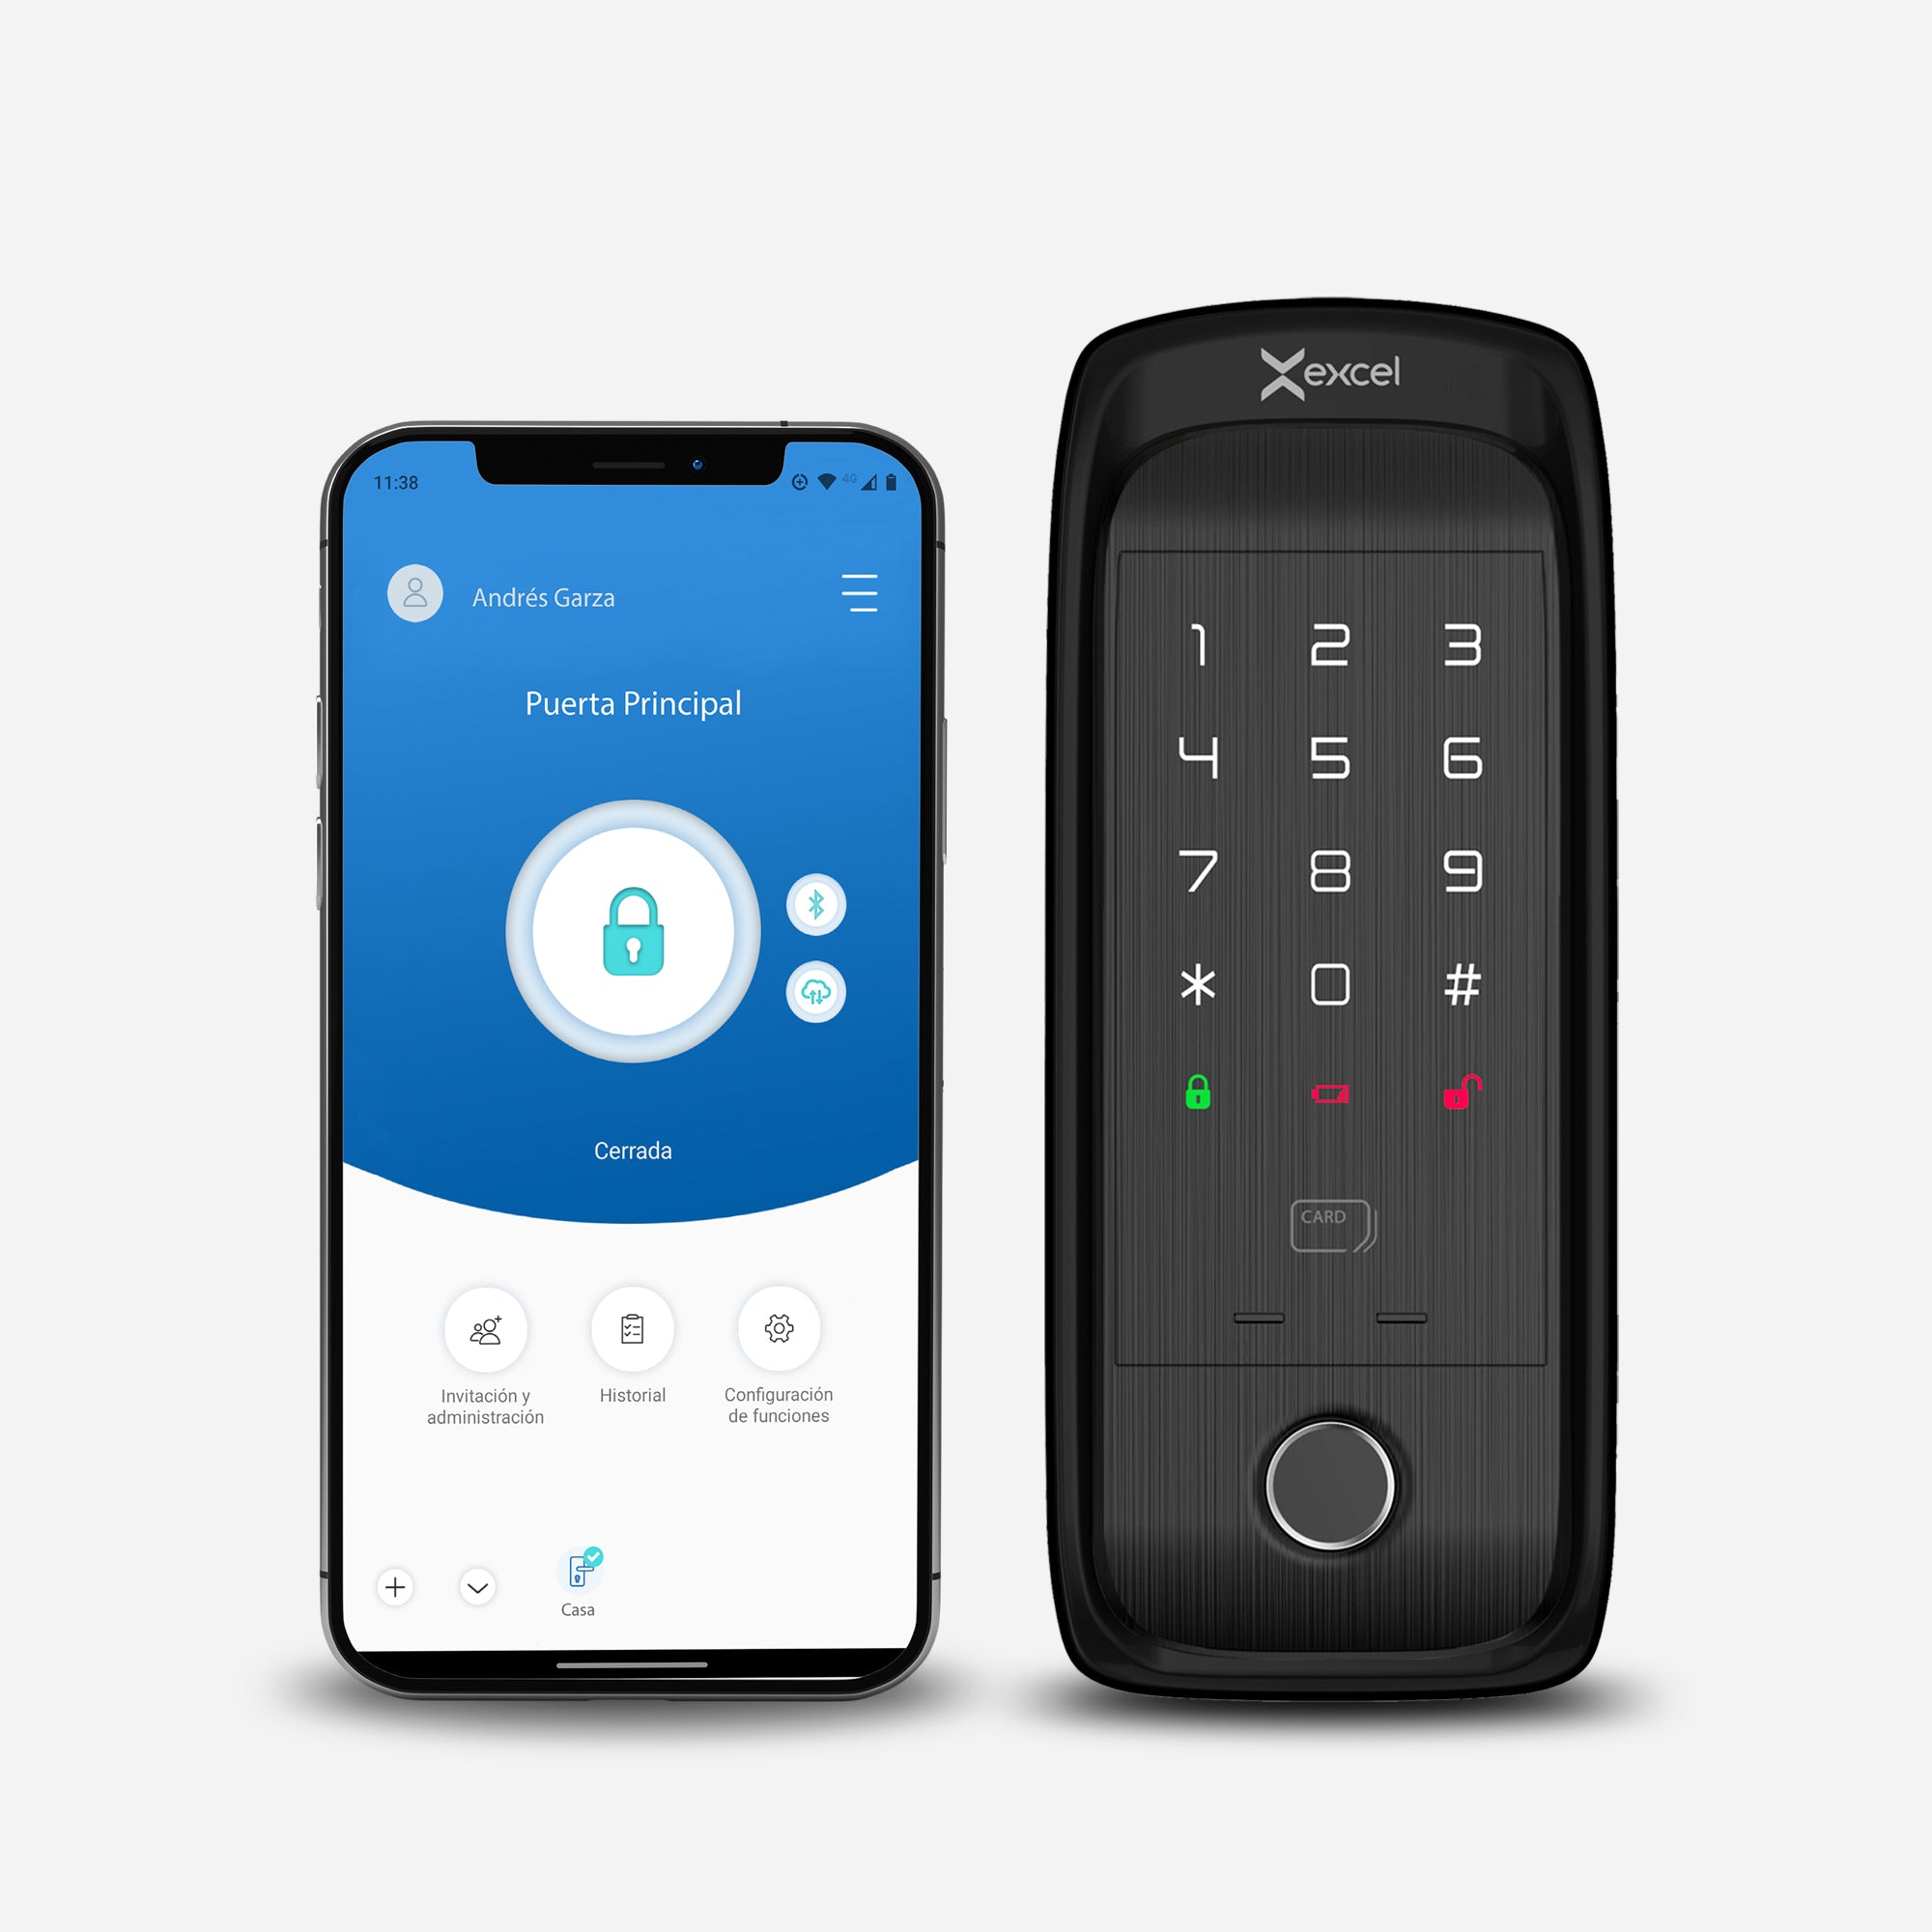 Cerradura digital tipo cerrojo EXC-SD400. WiFi y Bluetooth, Huella Digital, Contraseña Numérica y Tarjeta RFID. Módulo exterior, vista frontal. Smartphone con App Excel Smart Doorlock.